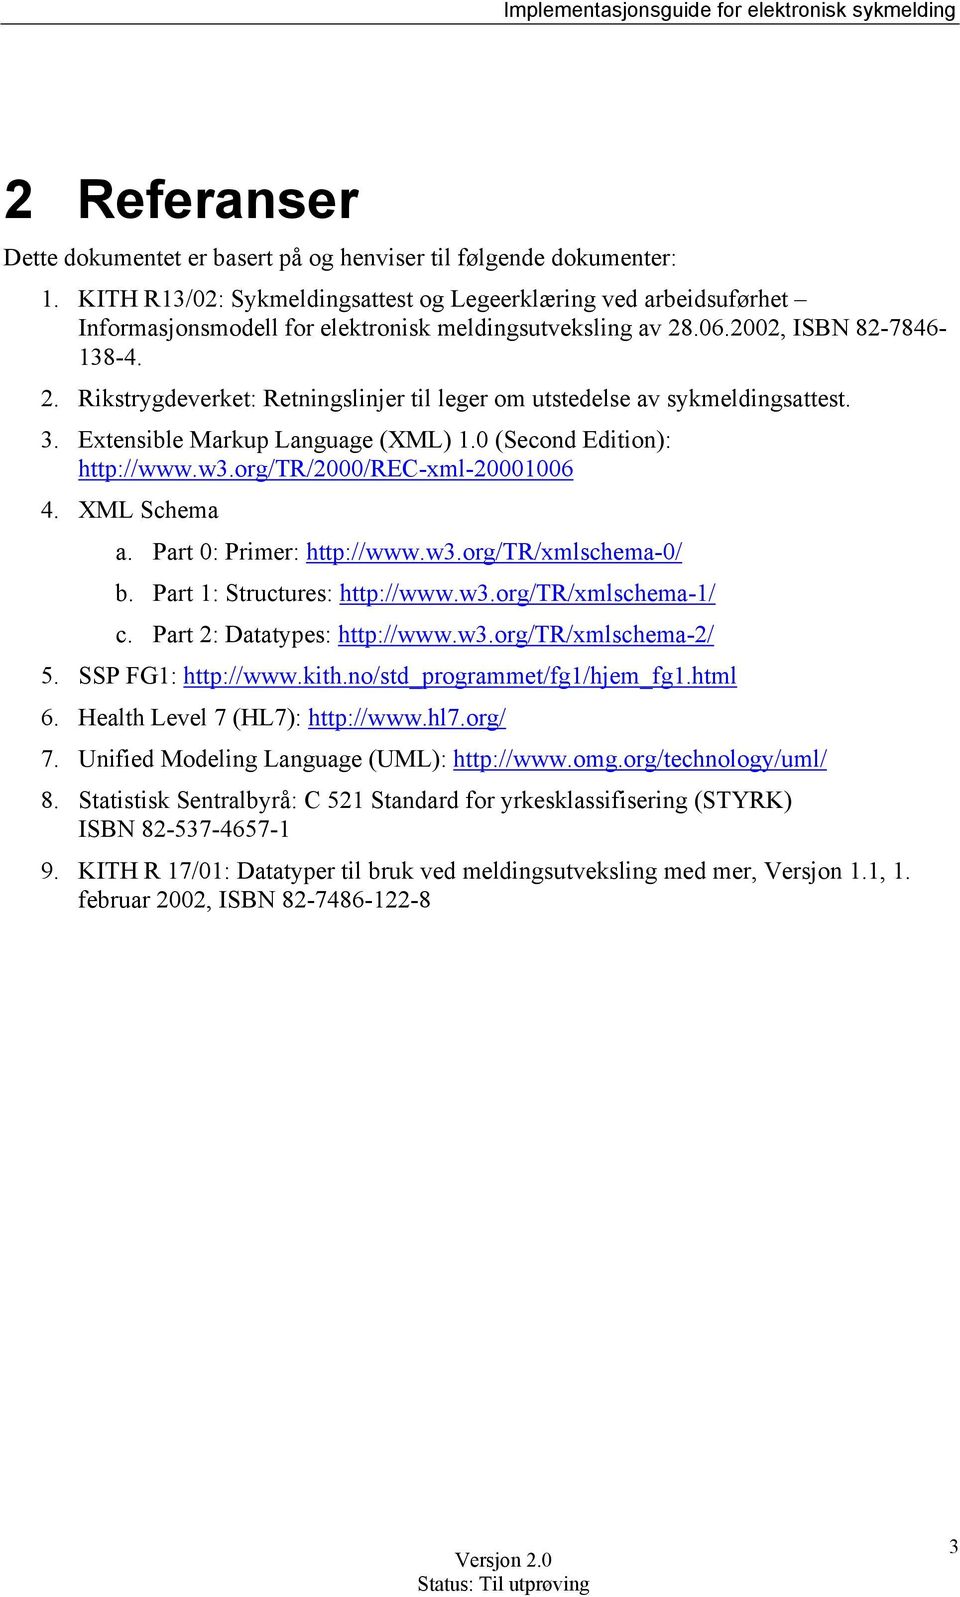 .06.2002, ISBN 82-7846- 138-4. 2. Rikstrygdeverket: Retningslinjer til leger om utstedelse av sykmeldingsattest. 3. Extensible Markup Language (XML) 1.0 (Second Edition): http://www.w3.